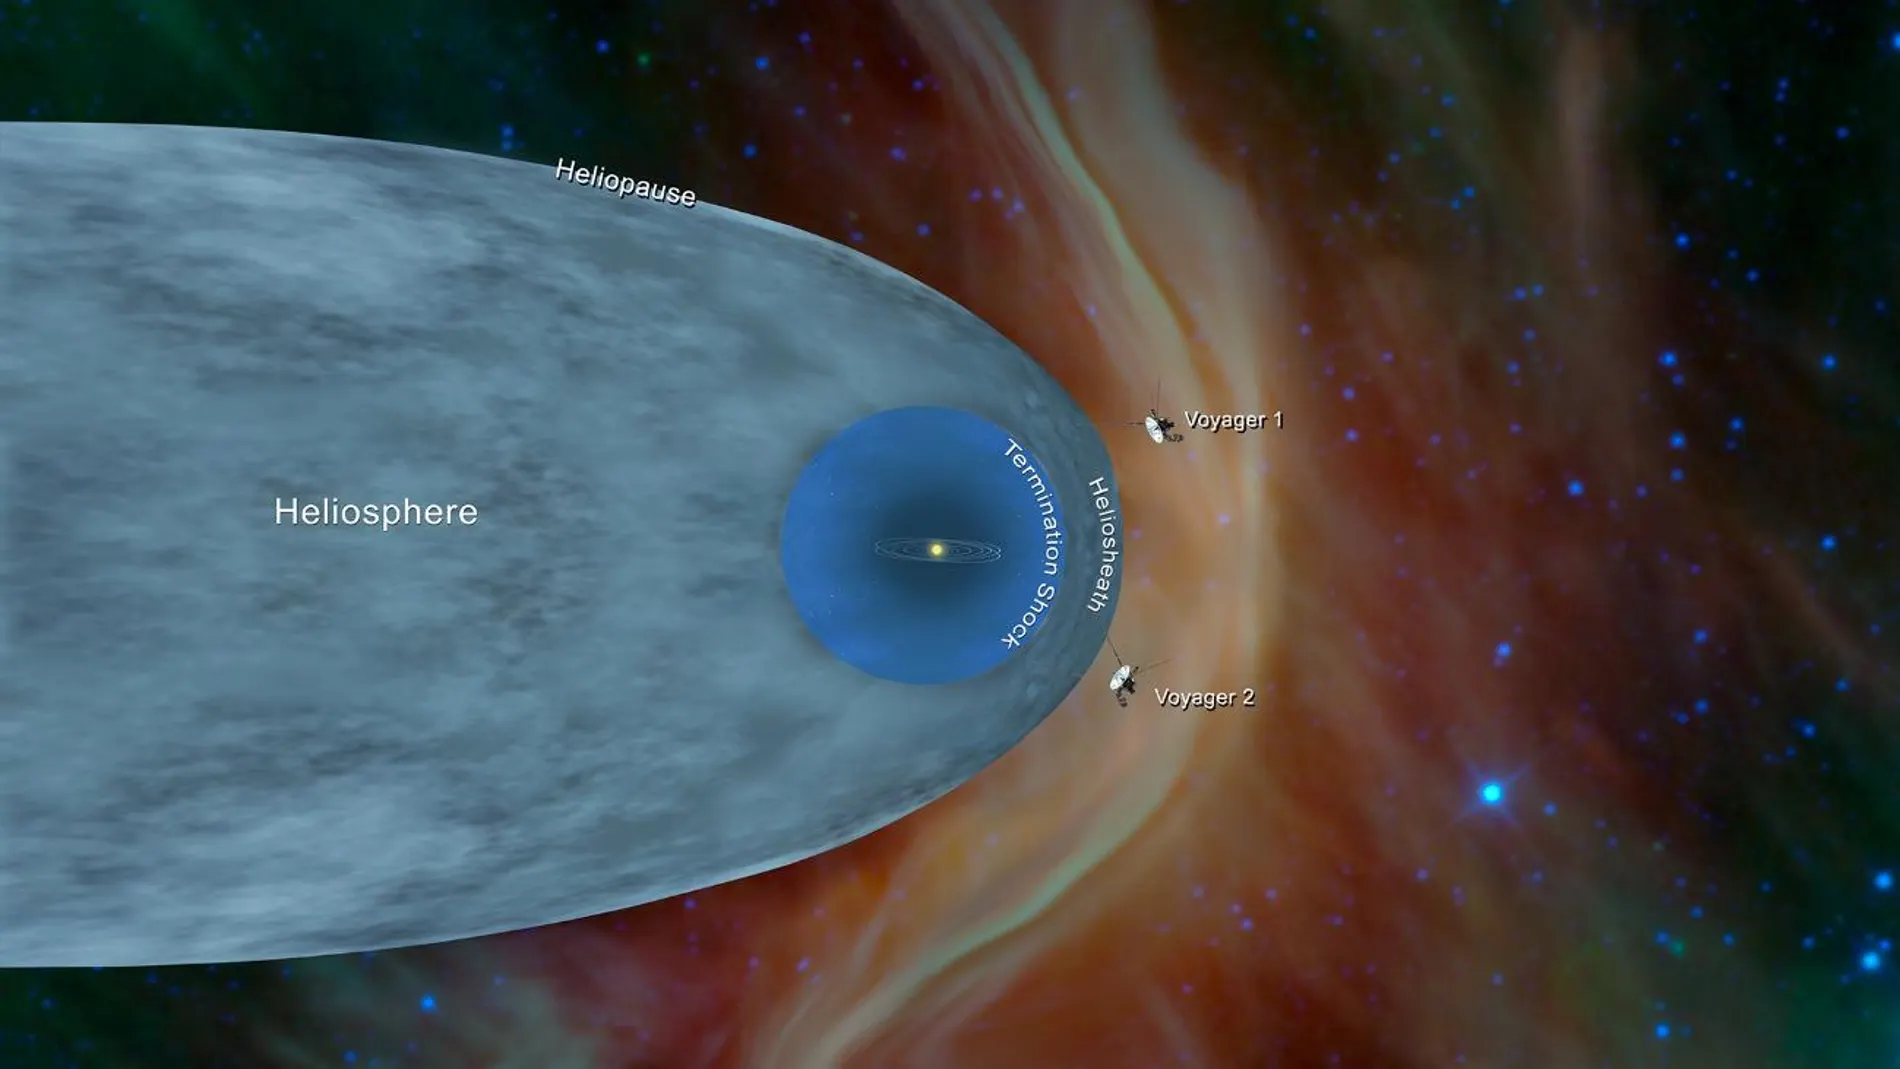 Imagen representando la distancia a las que estaban las Voyager en 2012